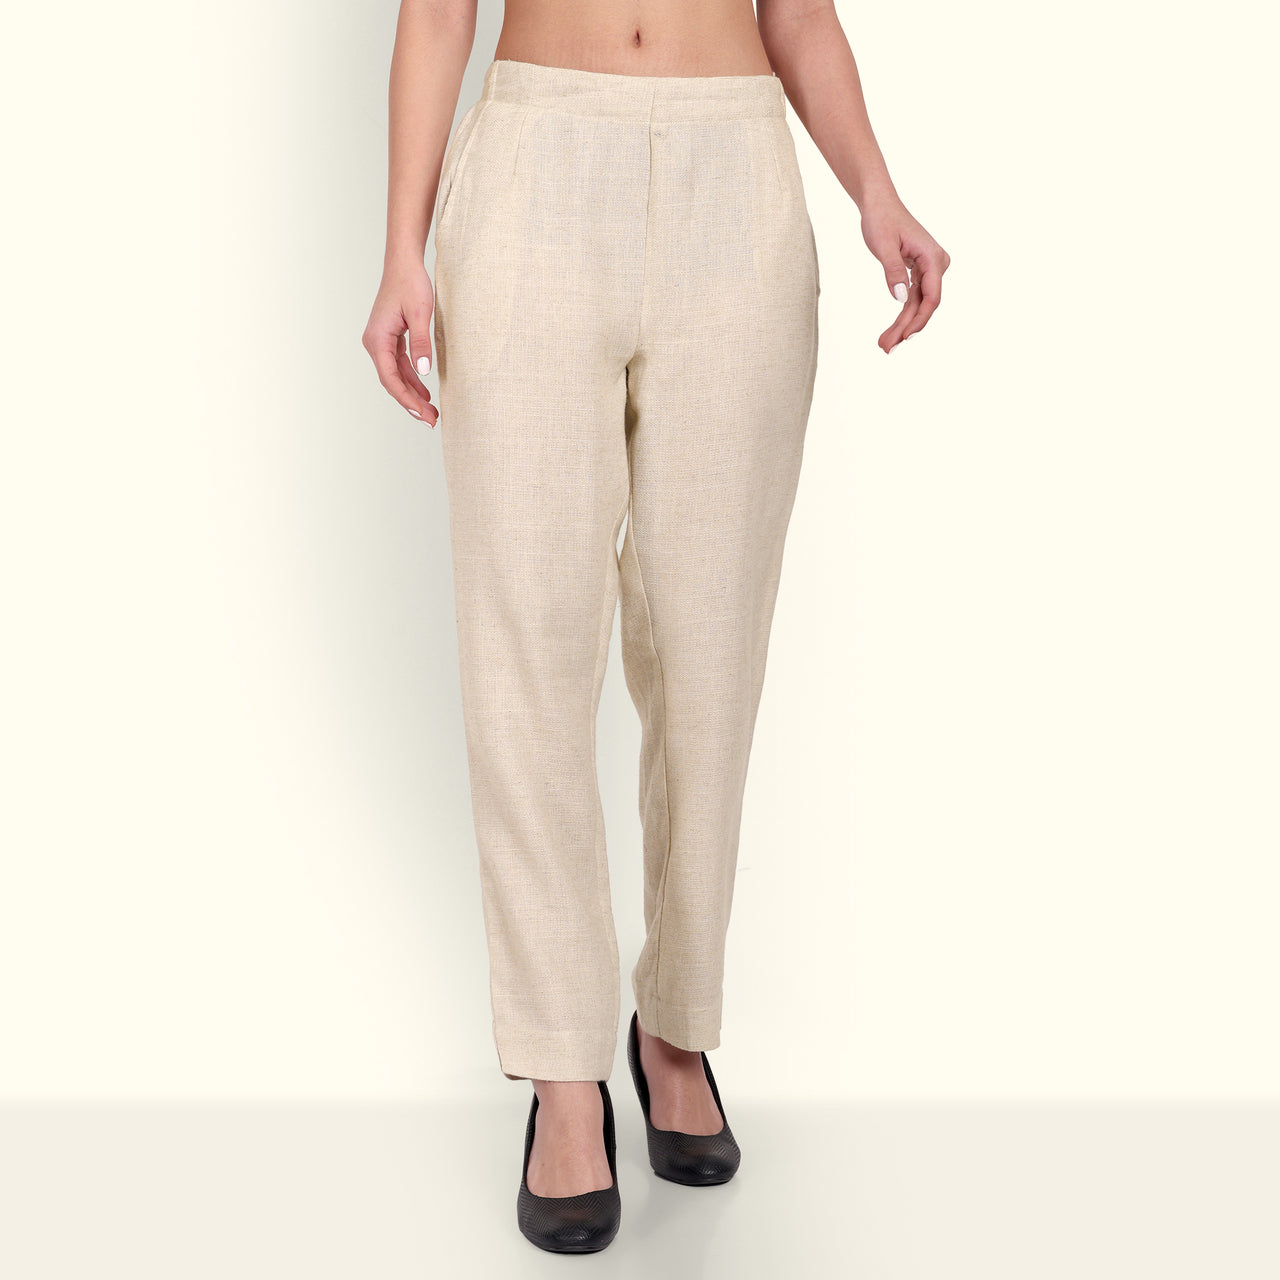 Plain Ladies Khadi Cotton Pant, Waist Size: 30.0 at Rs 300/piece in Surat